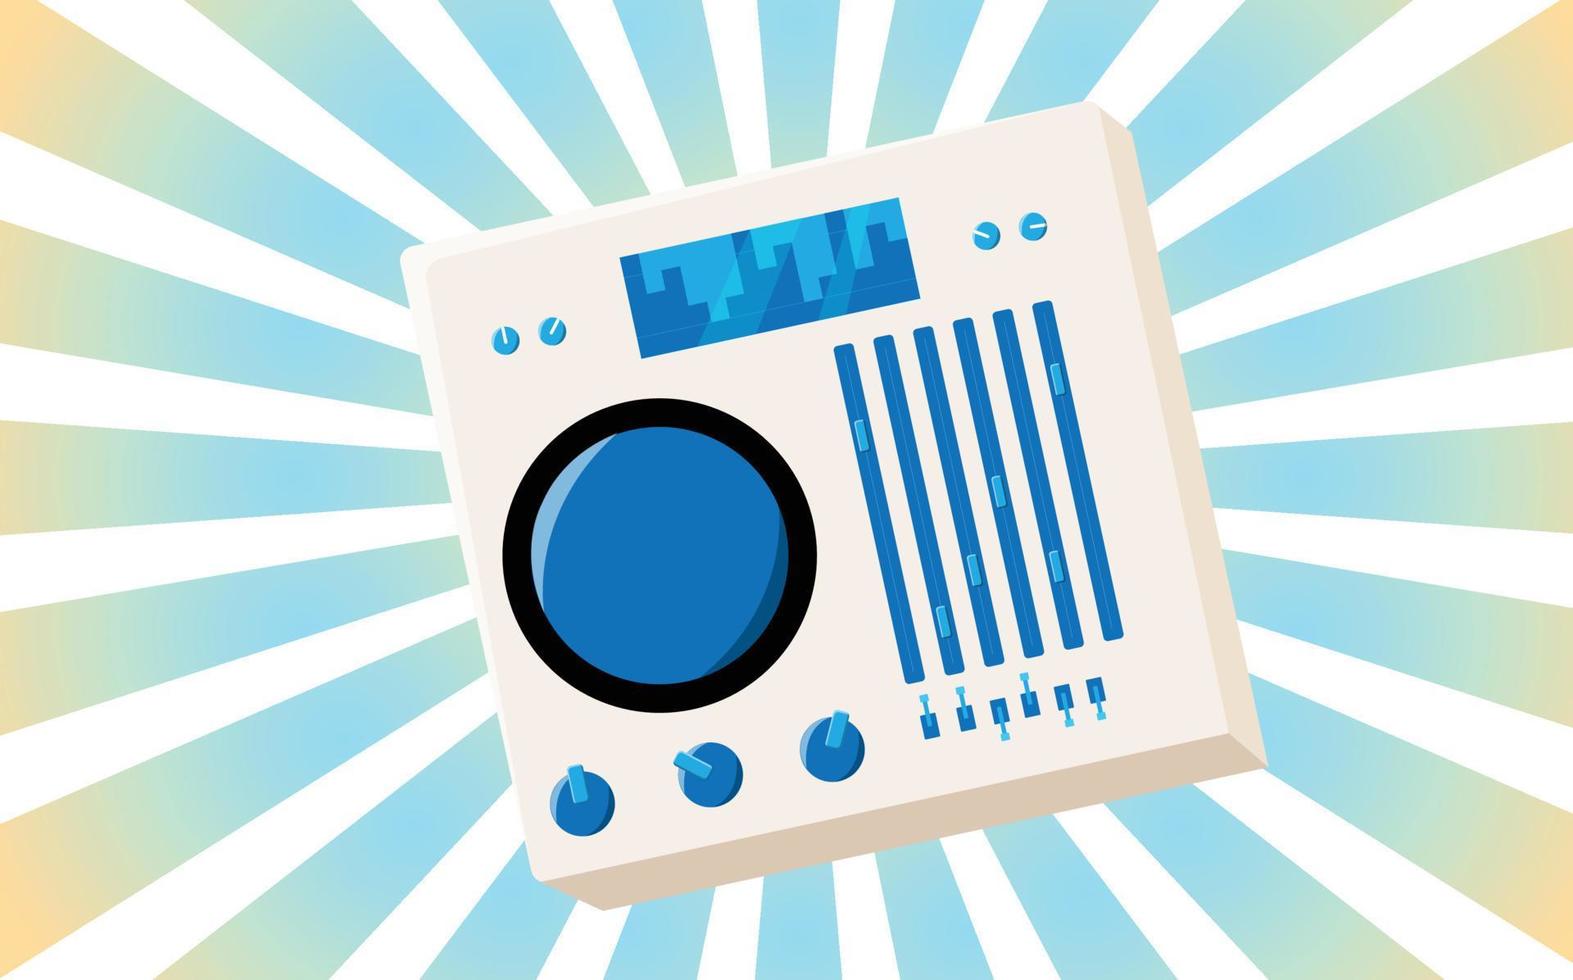 ancienne affiche vintage rétro avec équipement de musique audio carte dj en vinyle avec curseurs et manivelles et boutons des années 70, 80, 90 sur fond des rayons bleus du soleil. illustration vectorielle vecteur